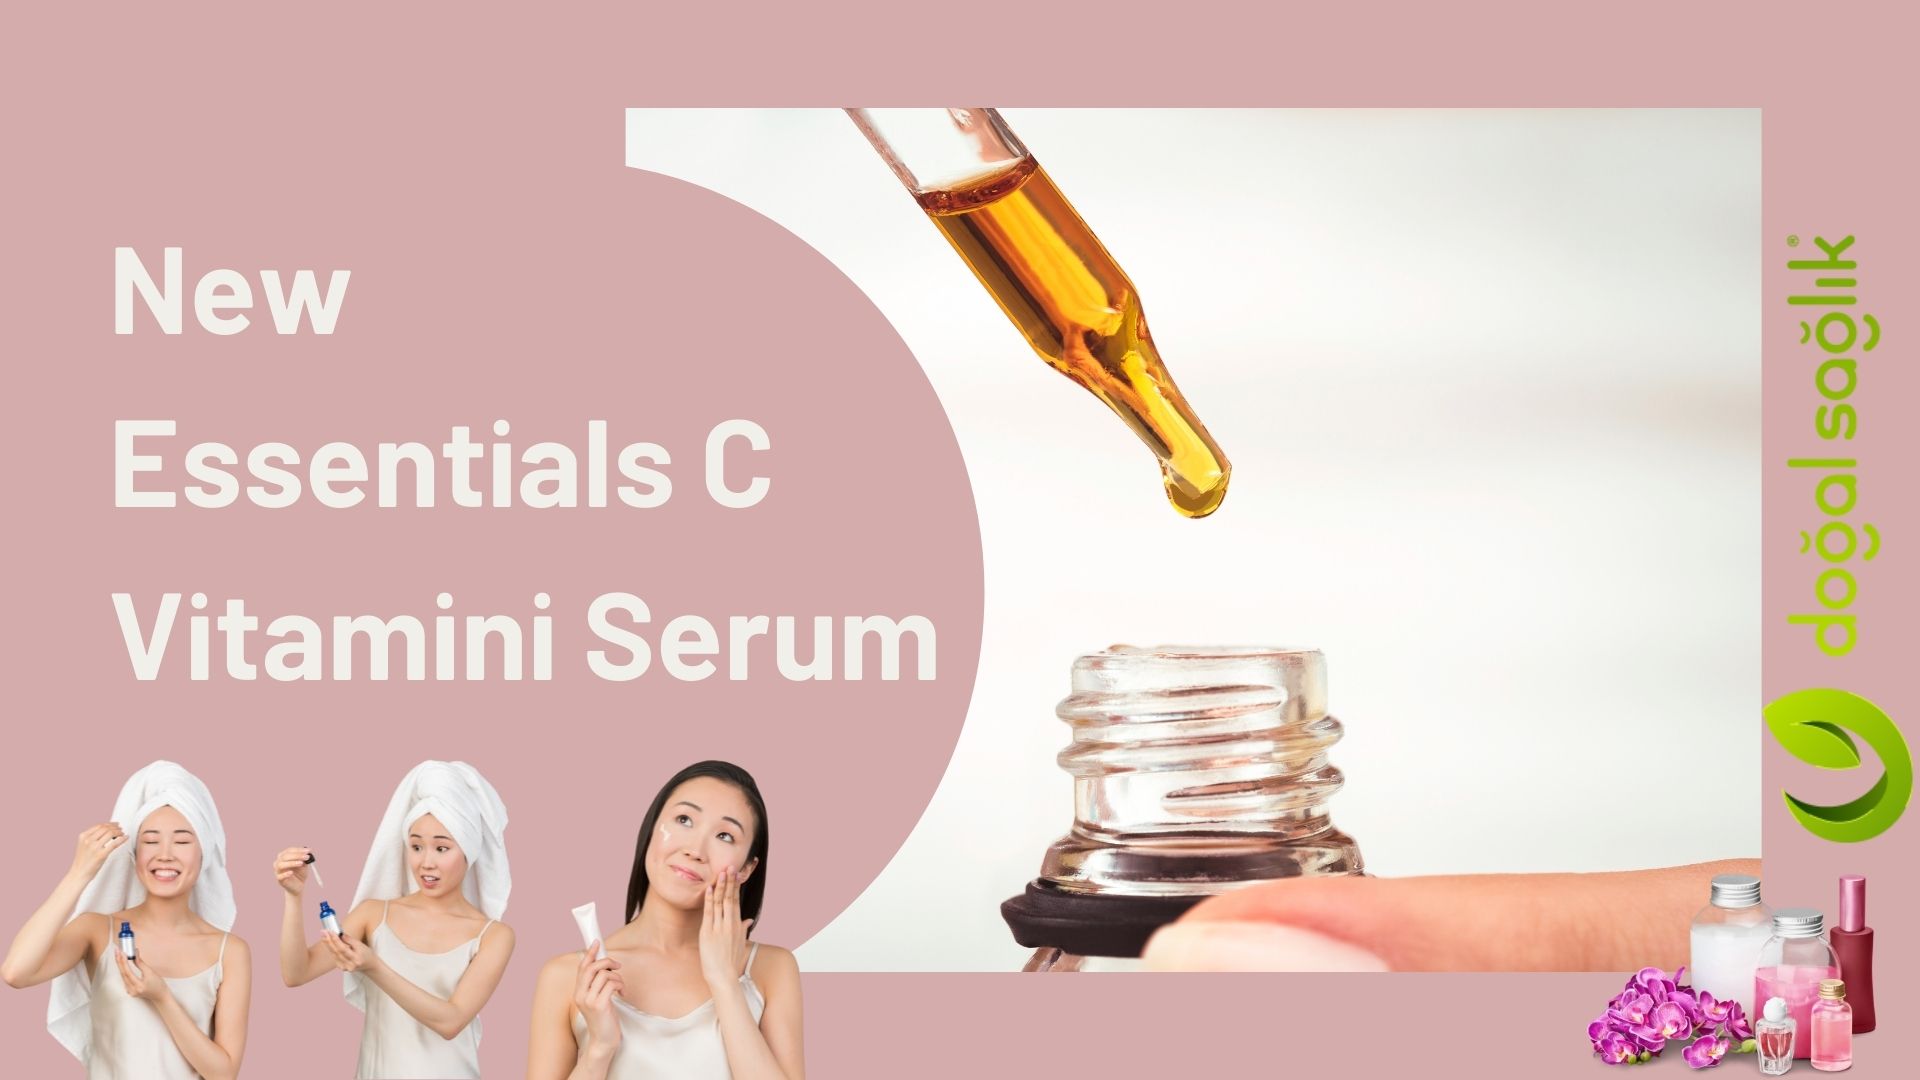 New Essentials C Vitamini Serum